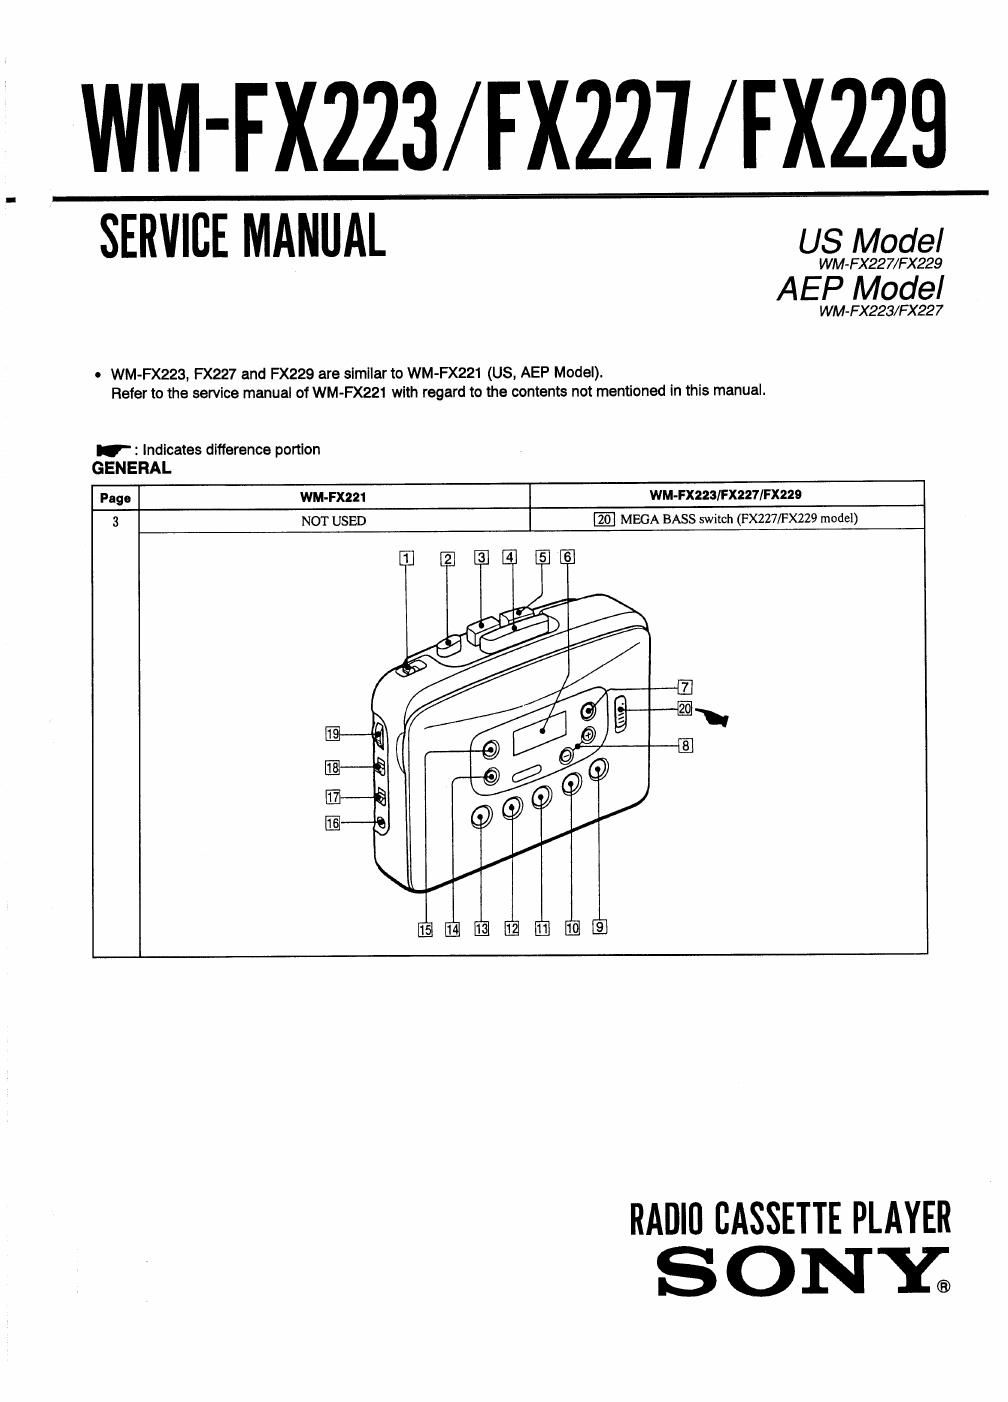 sony wm fx 229 service manual